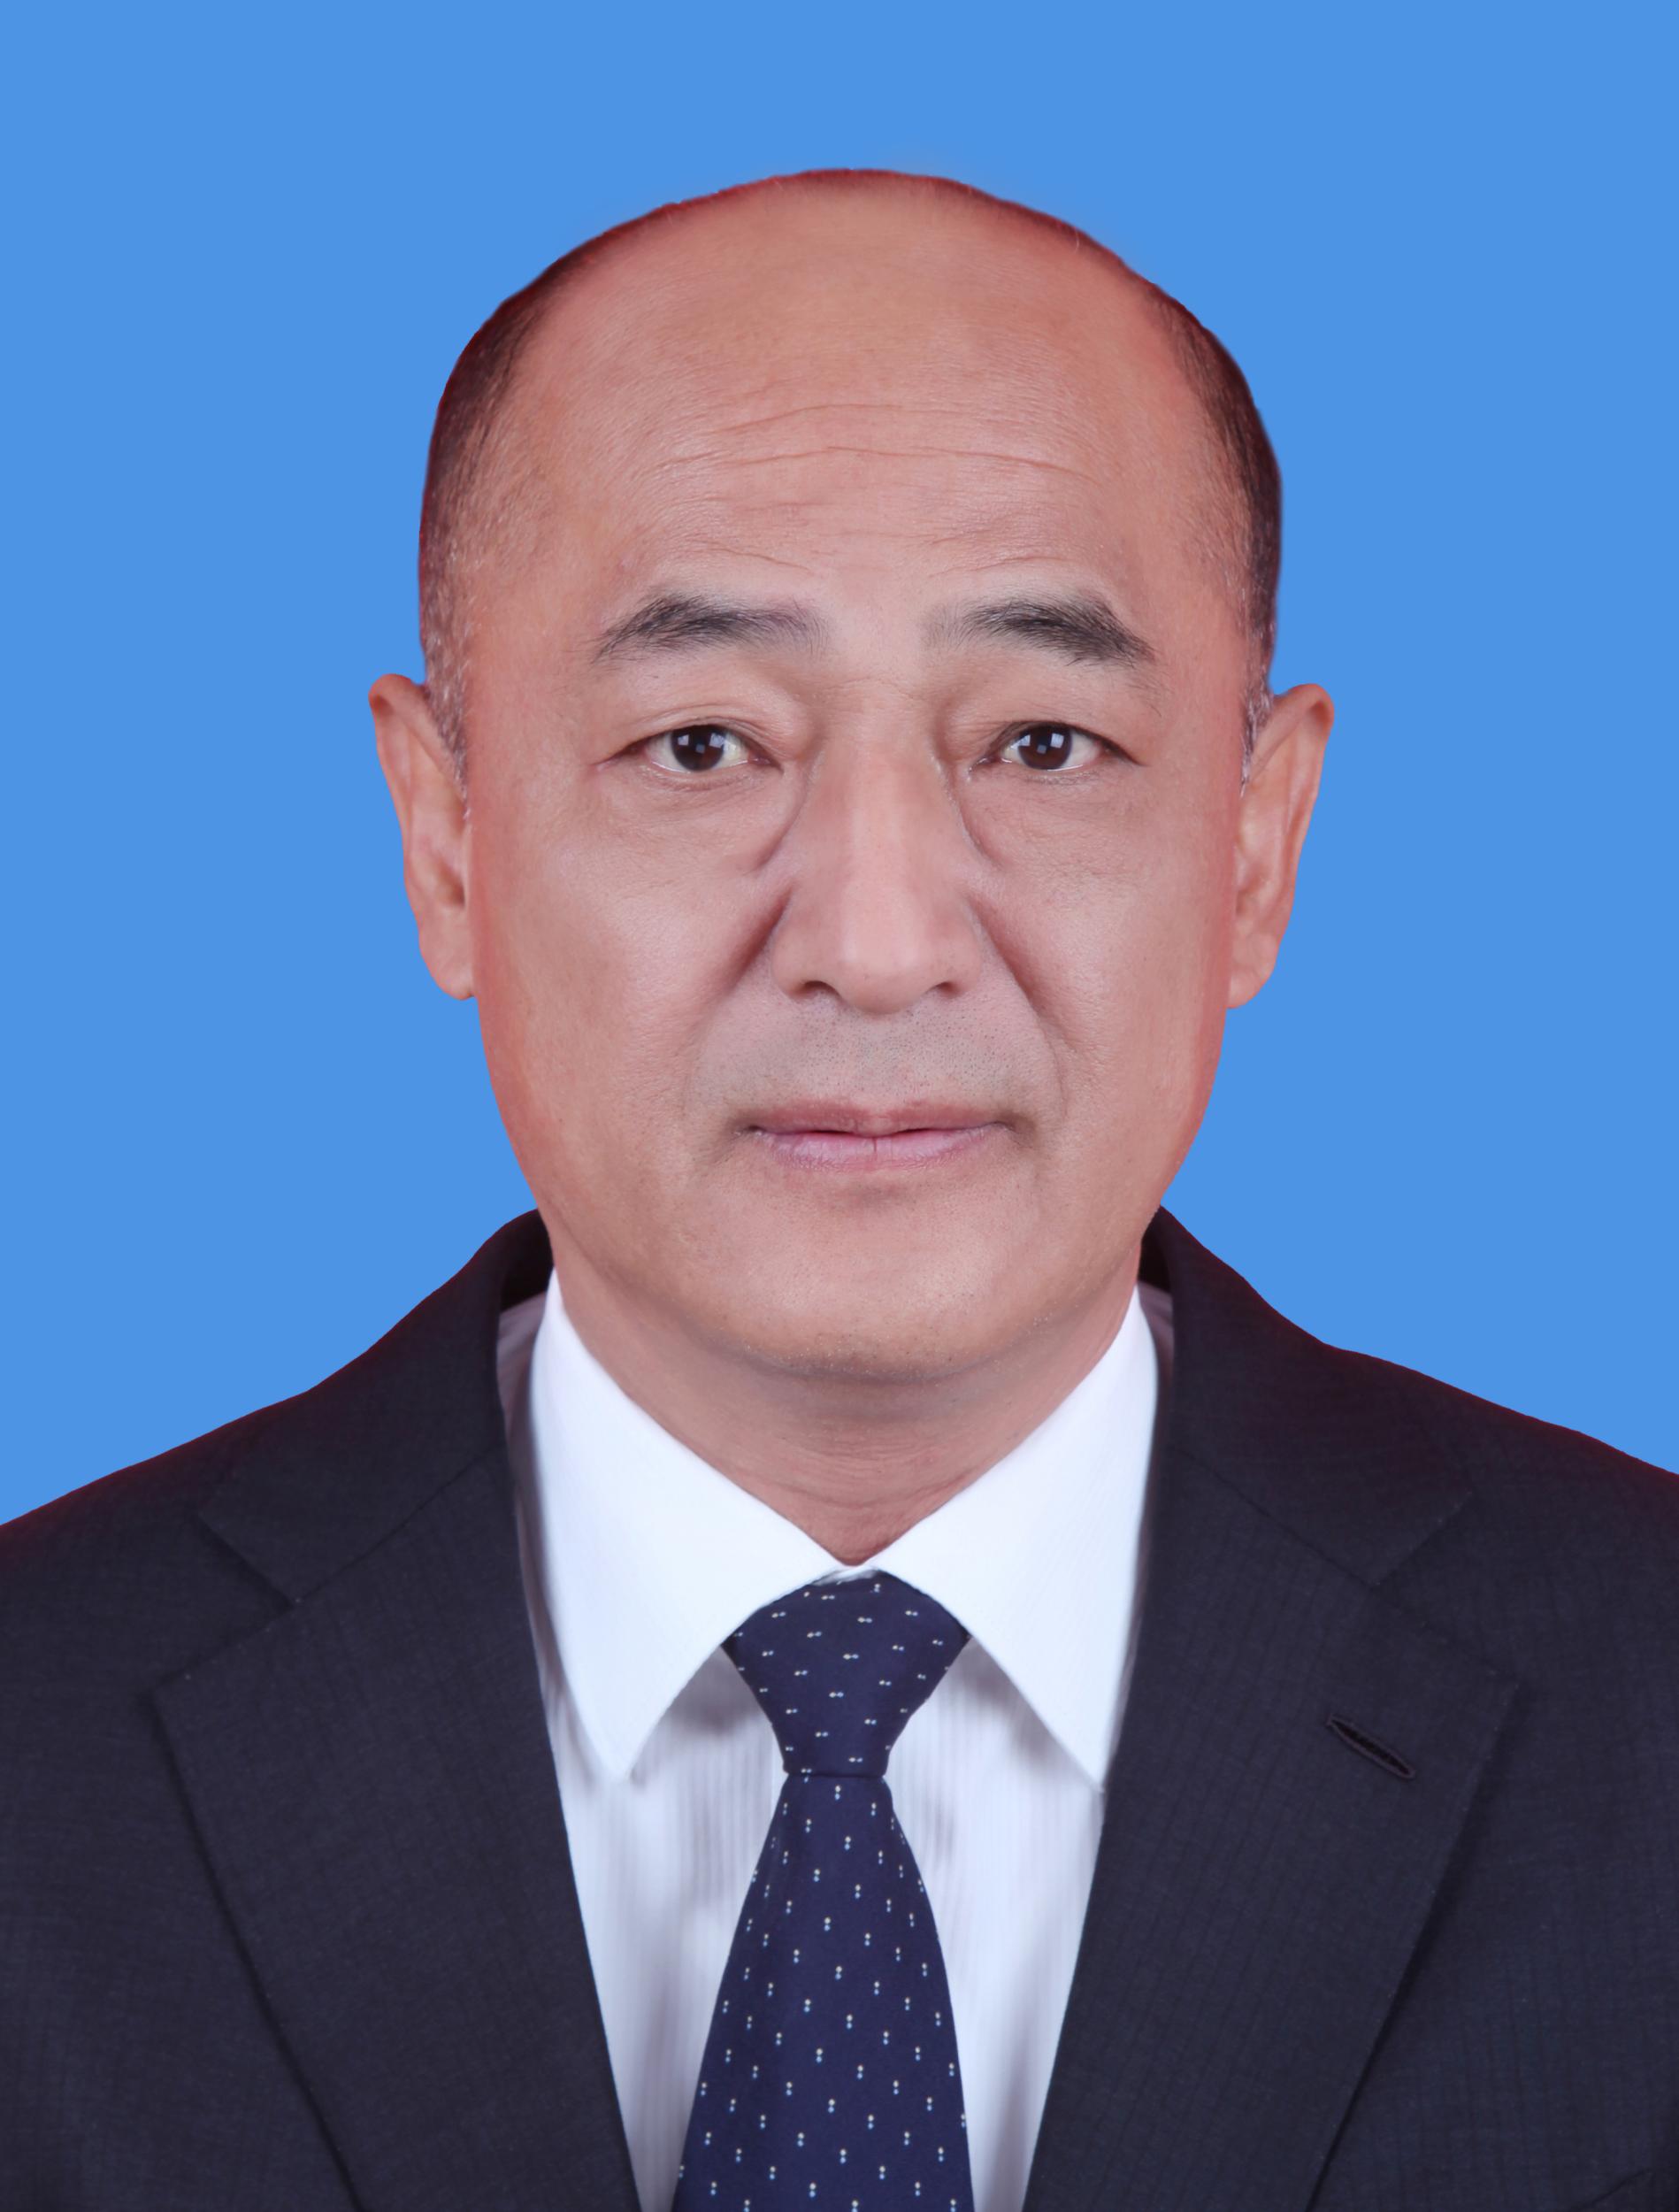 聶瑞平(河北省人大常委會副主任、保定市委書記)